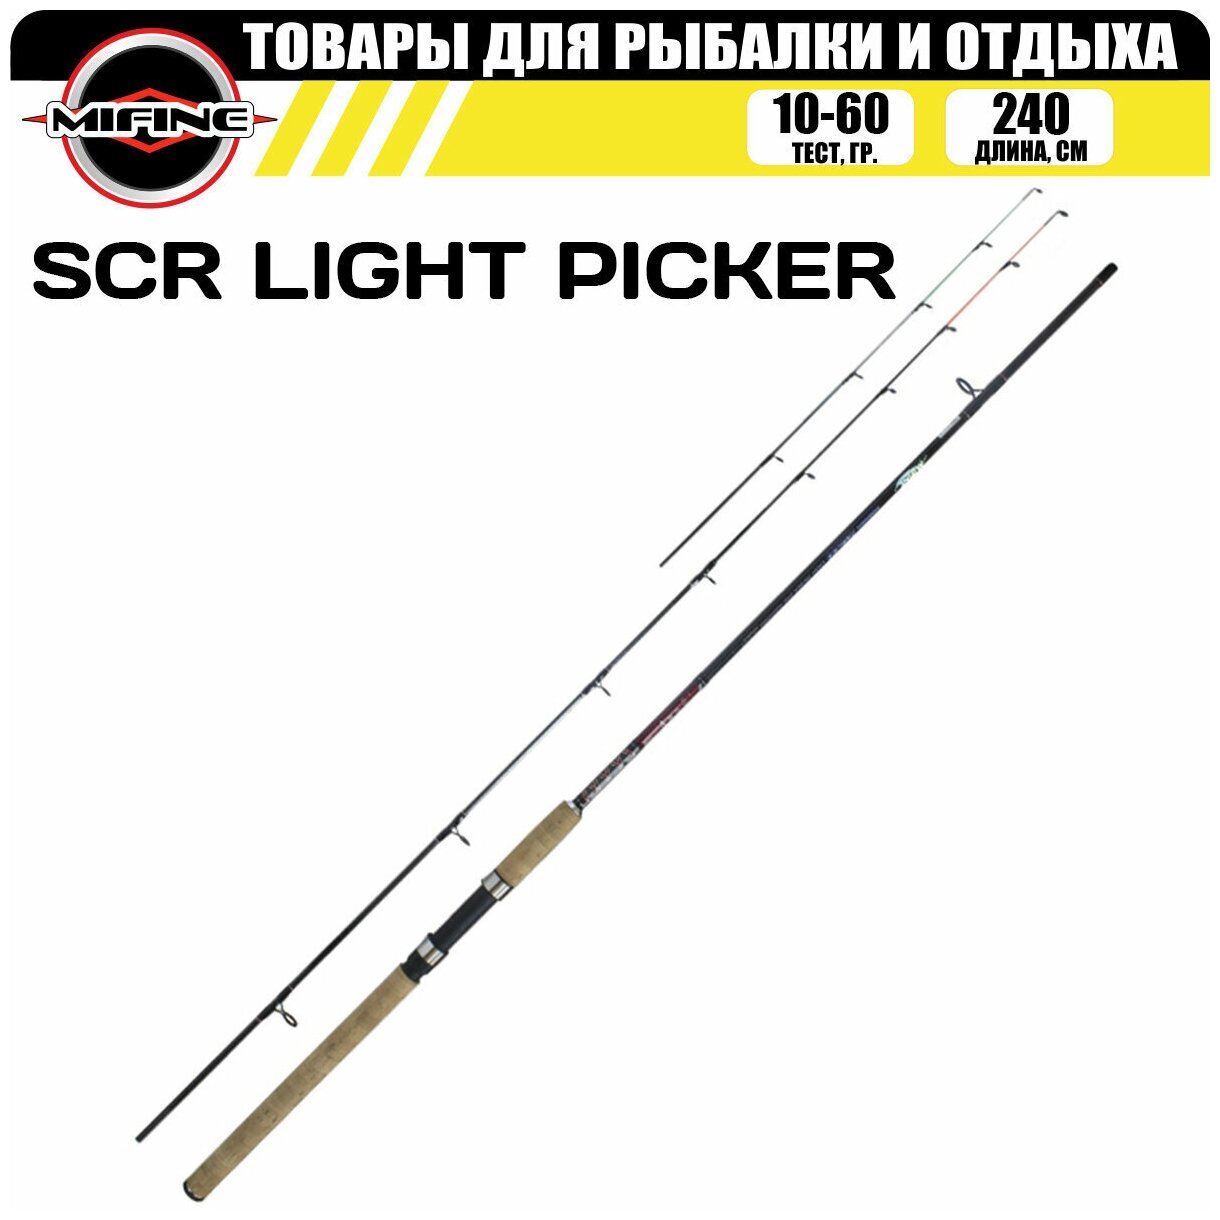 Удилище пикерное с быстрым строем MIFINE SCR LIGHT PICKER 2.4м (10-60гр), для рыбалки, рыболовное, фидер